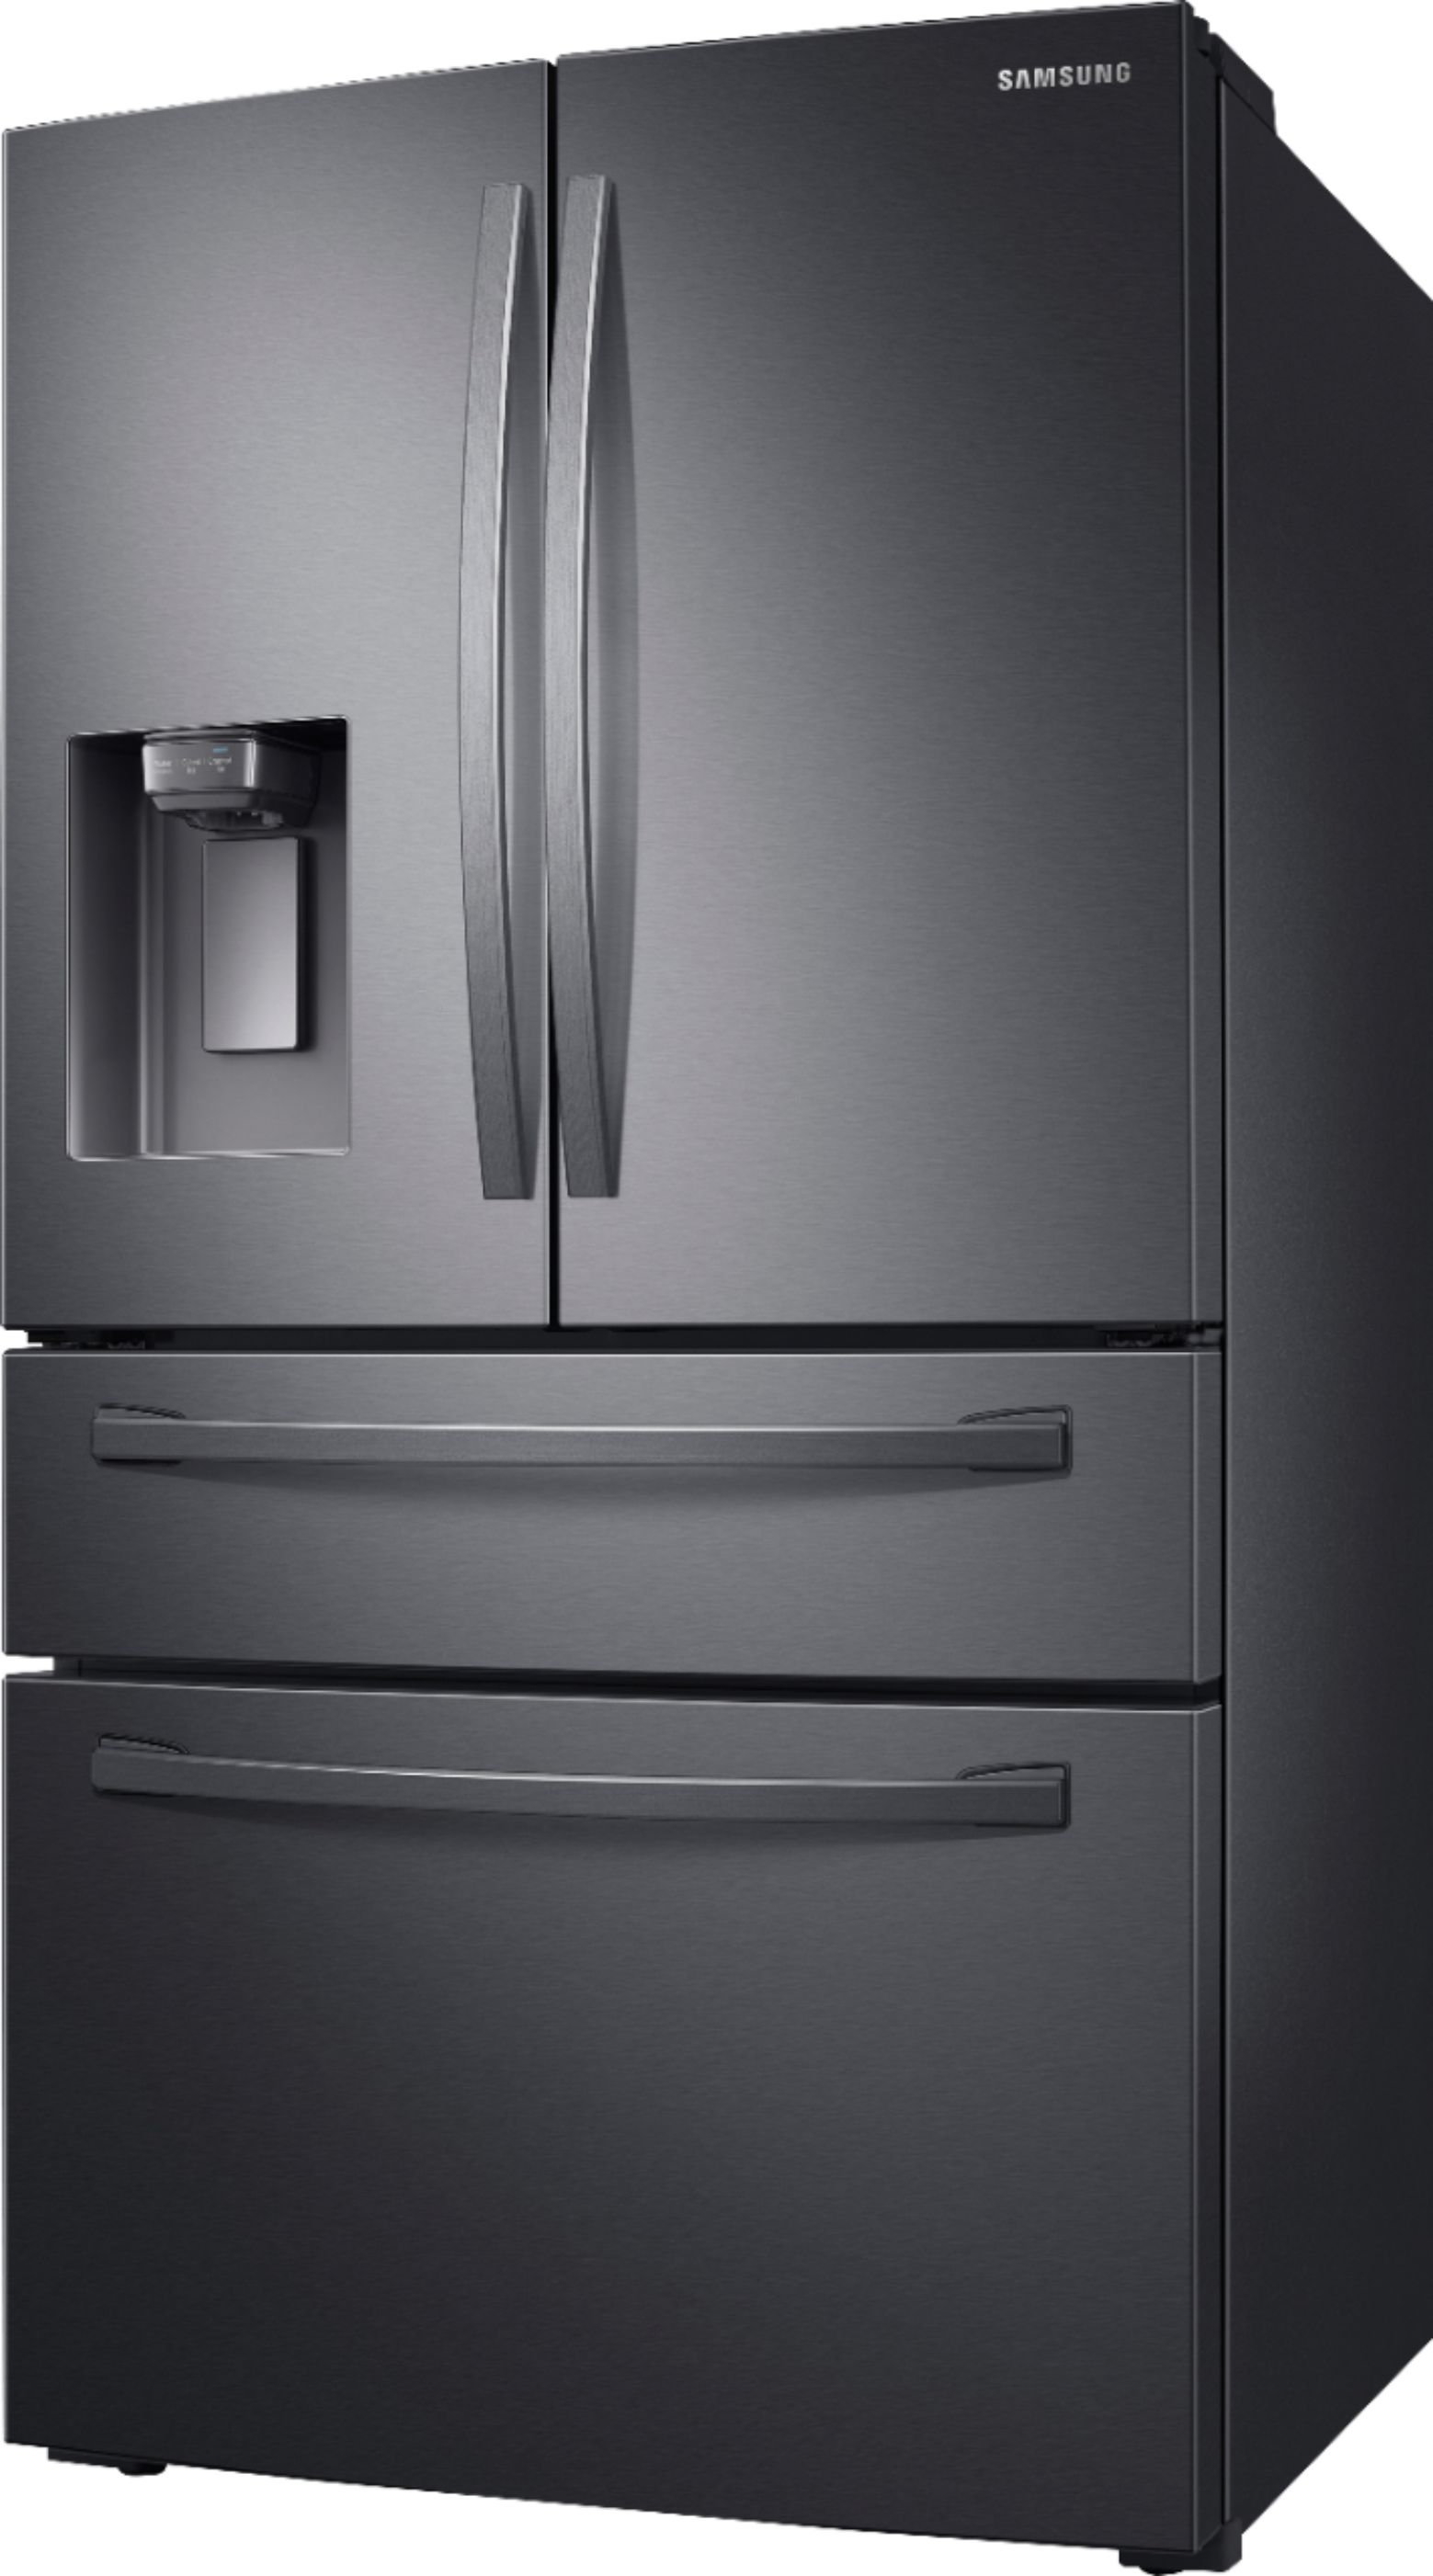 Berucht eenheid talent Samsung 28 cu. ft. 4-Door French Door Refrigerator with FlexZone™ Drawer  Black stainless steel RF28R7201SG/AA - Best Buy